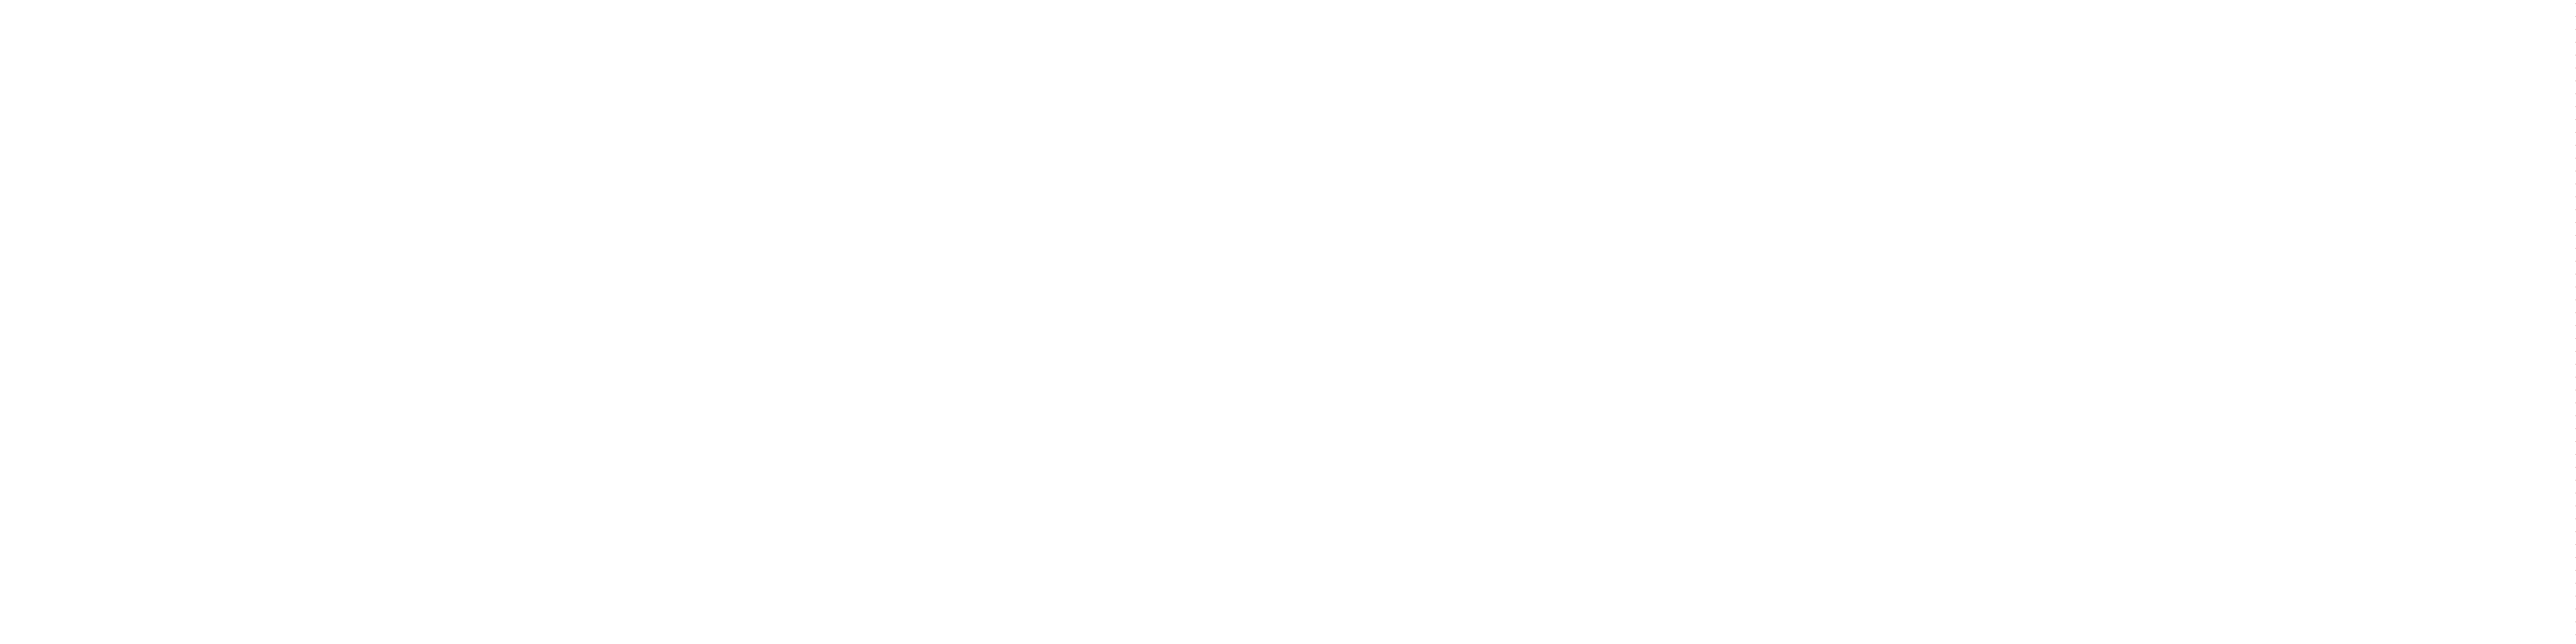 ChurchSuite login